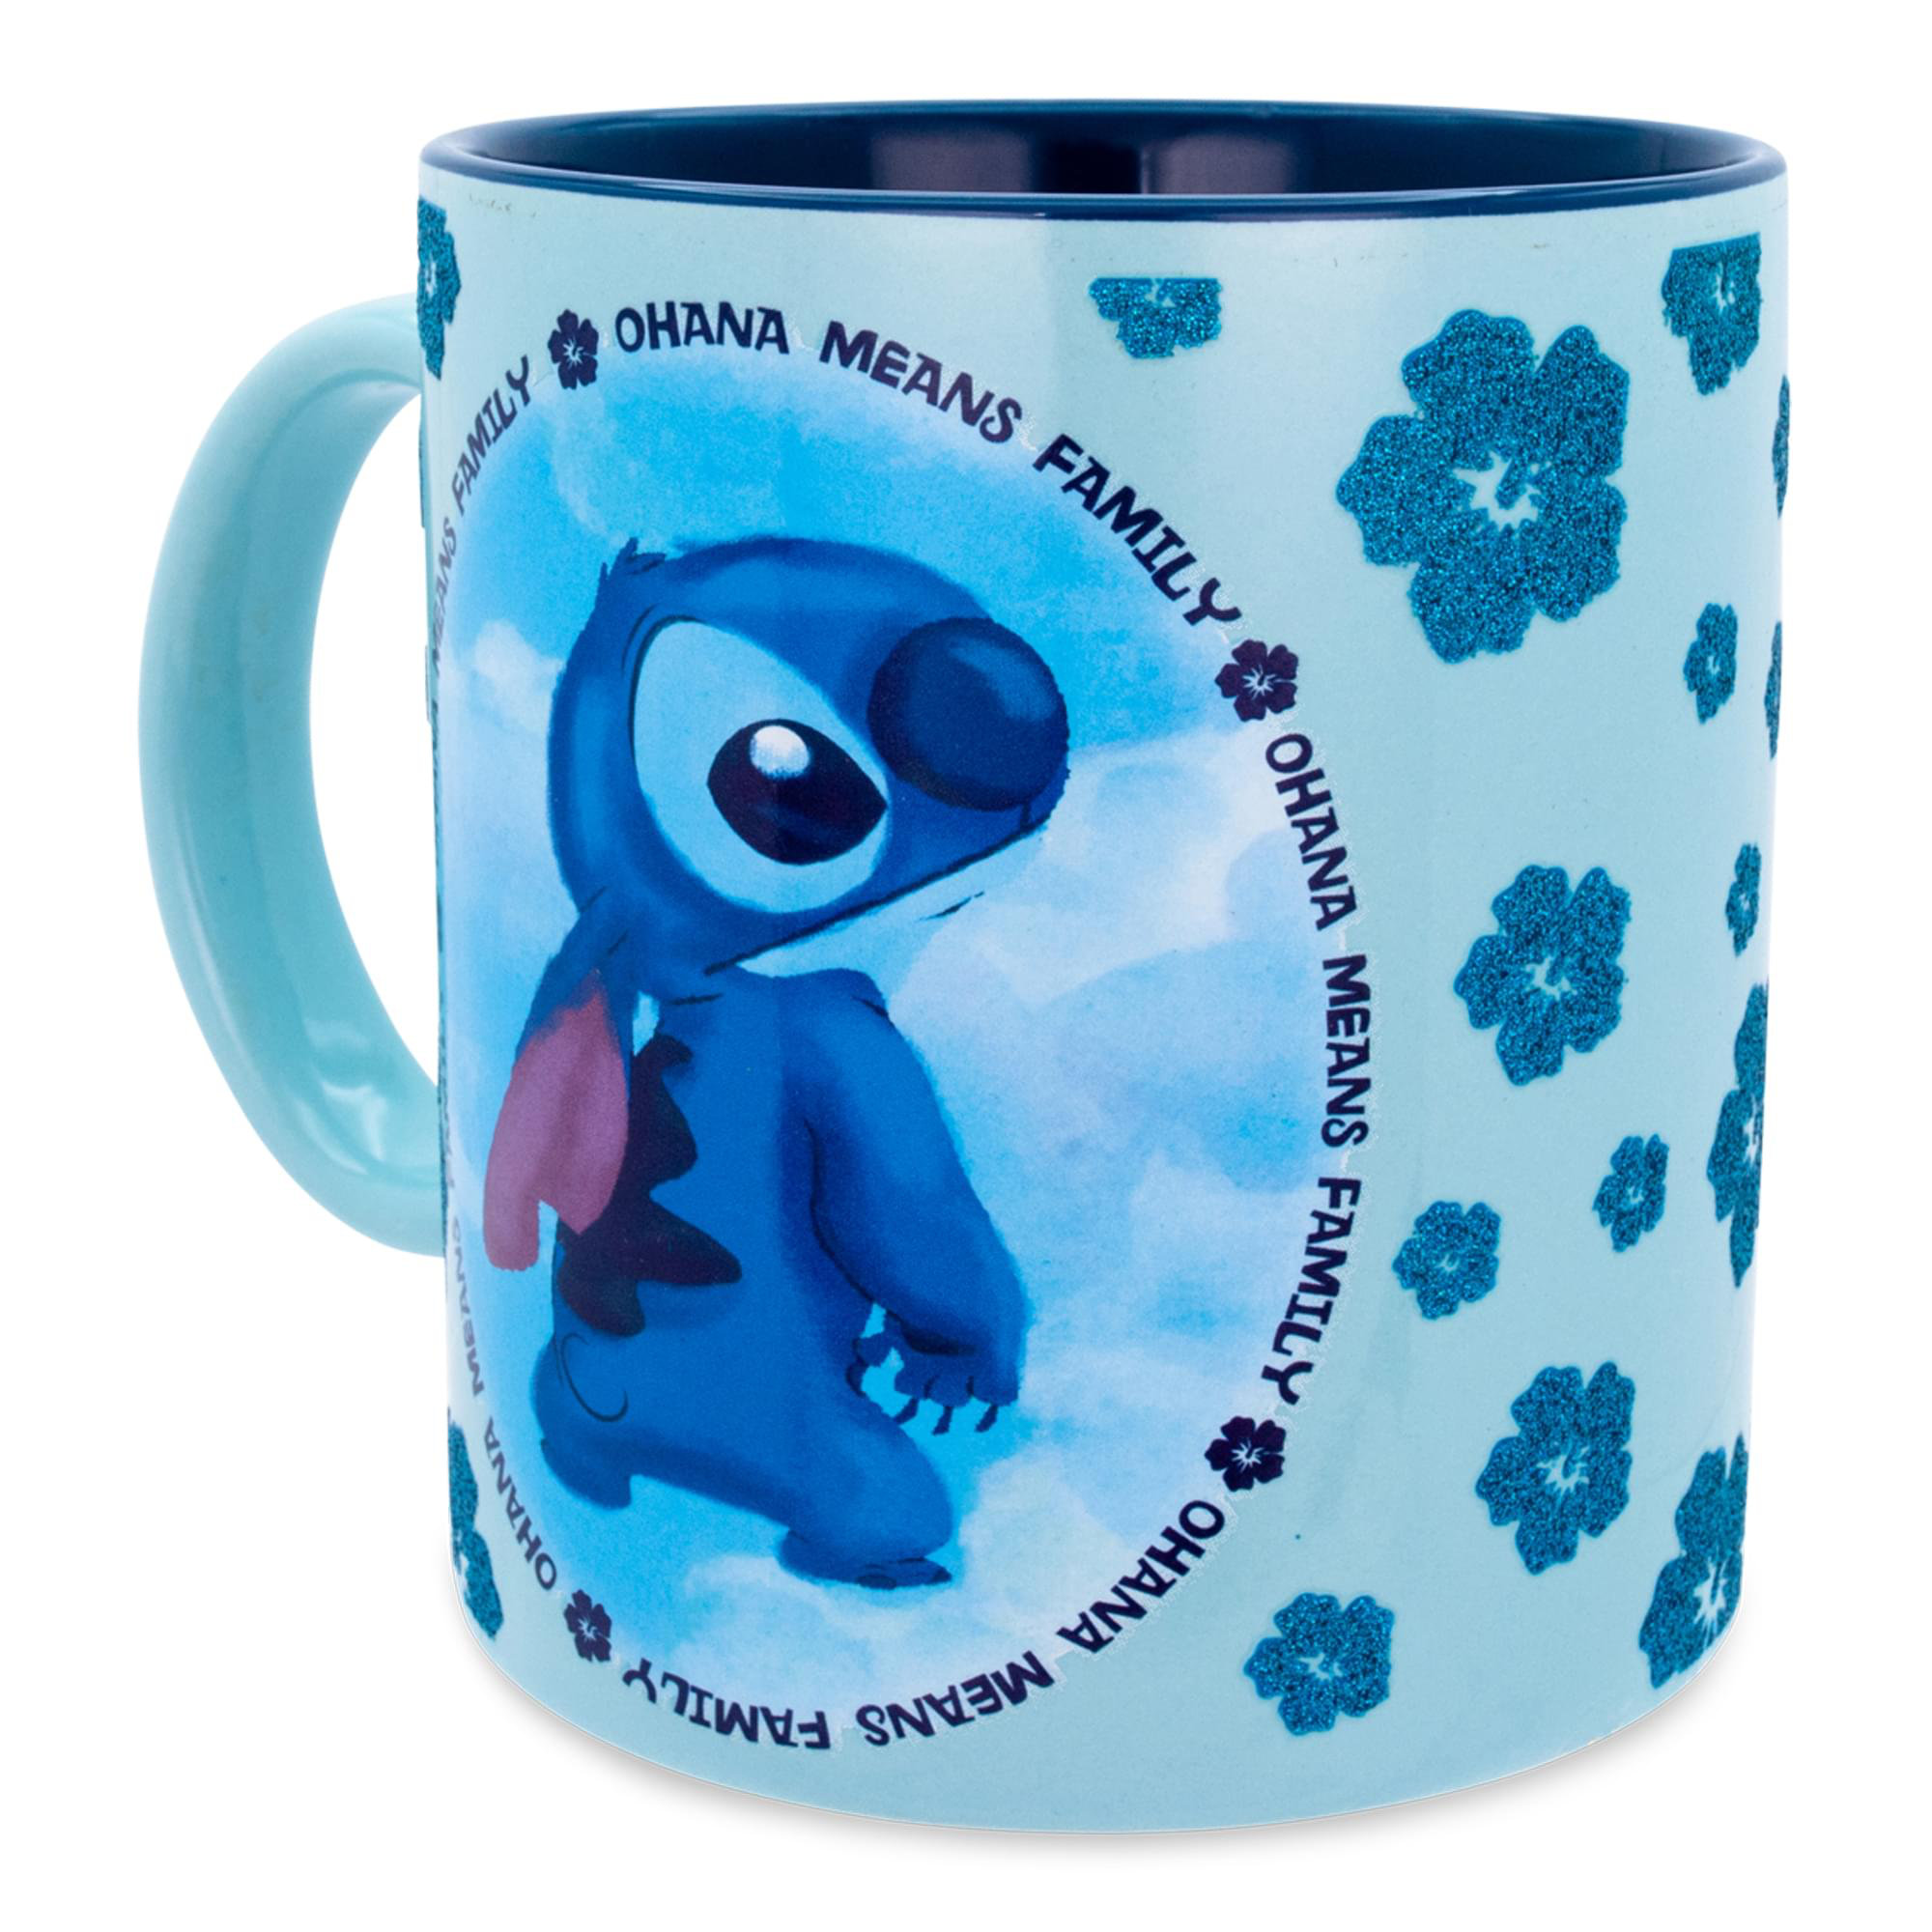 Stitch Ohana – Coffee Mug - PureArtz